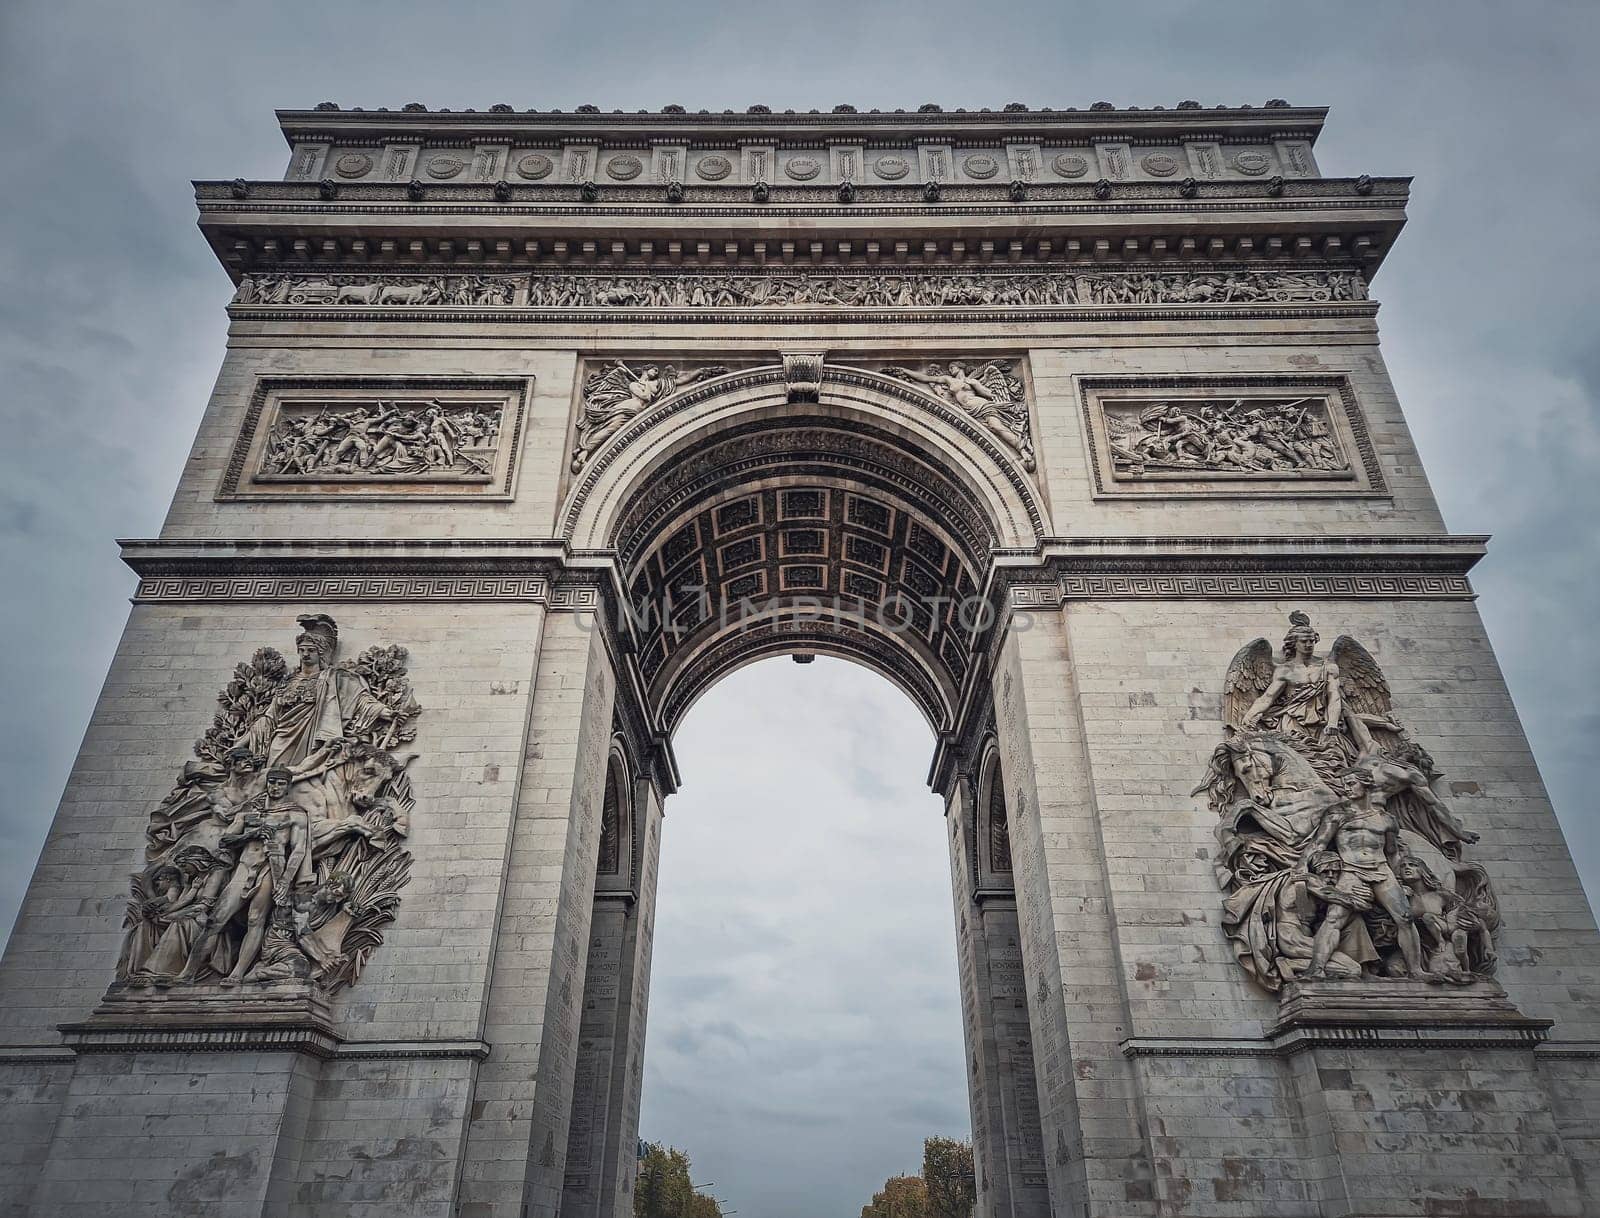 Triumphal Arch (Arc de triomphe) in Paris, France. Closeup architectural details of the famous historic landmark	
